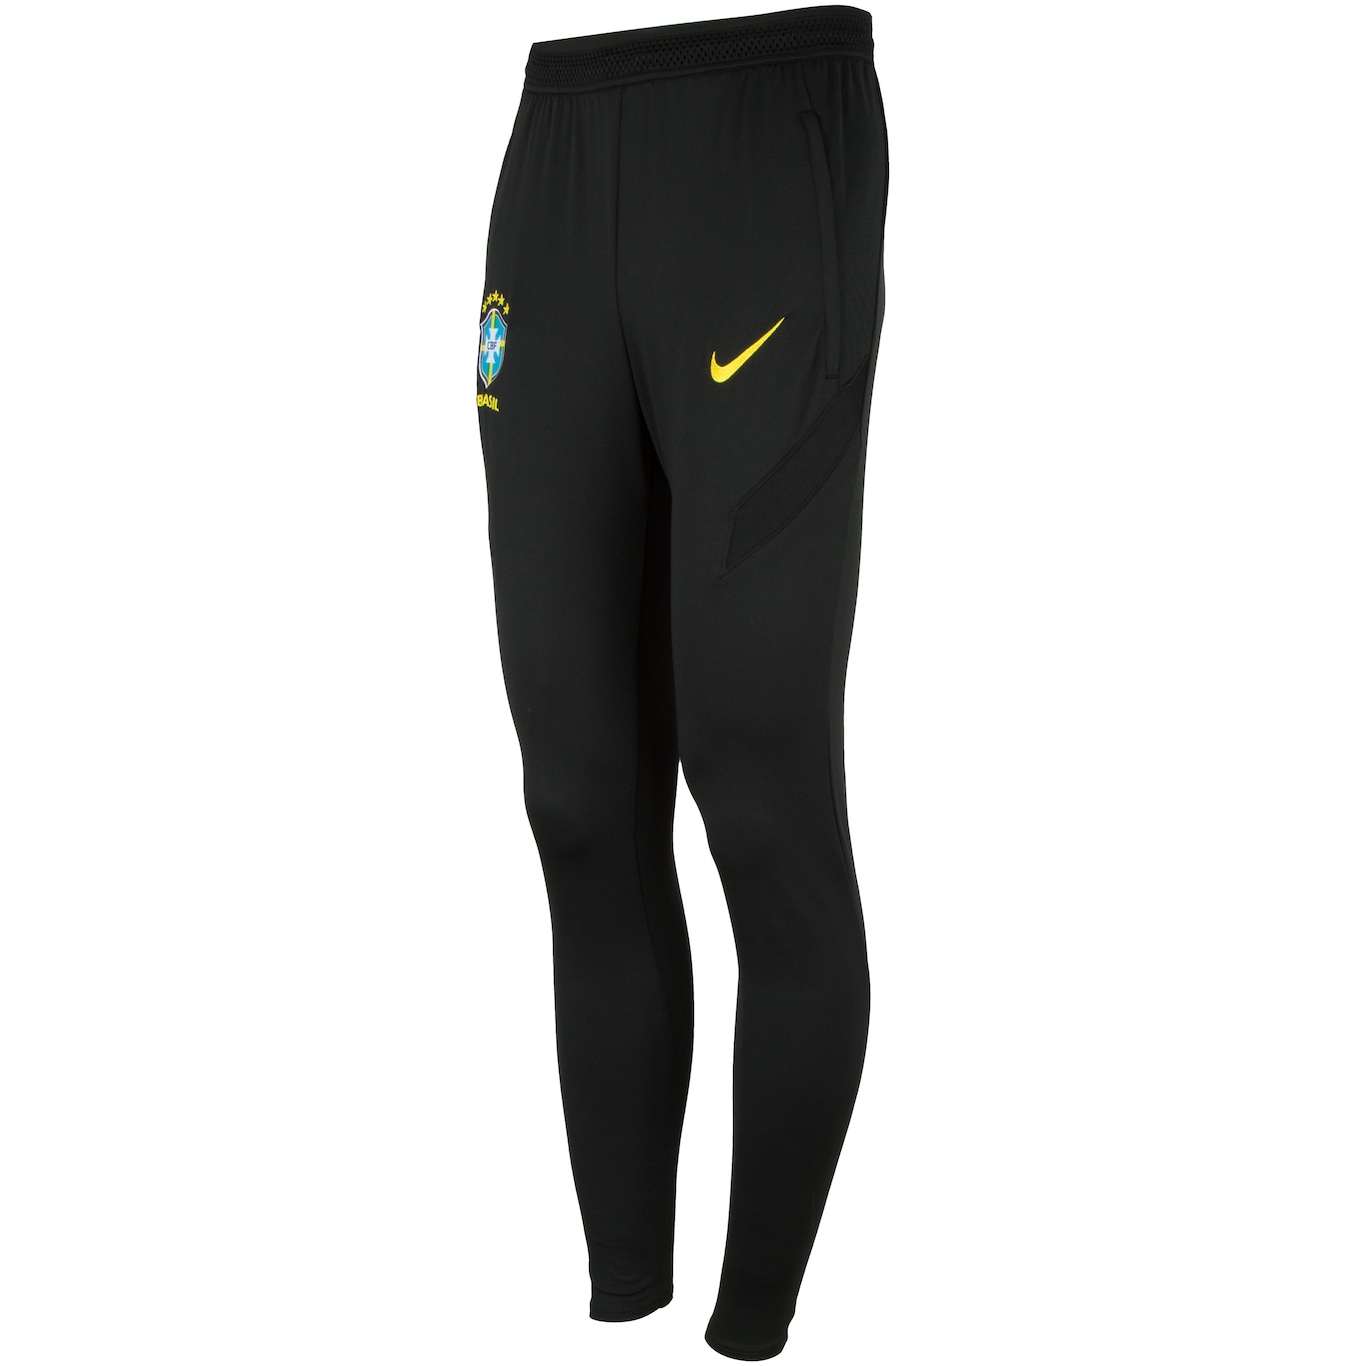 Calça da Seleção Brasileira Nike Dry STRK Pant - Masculina